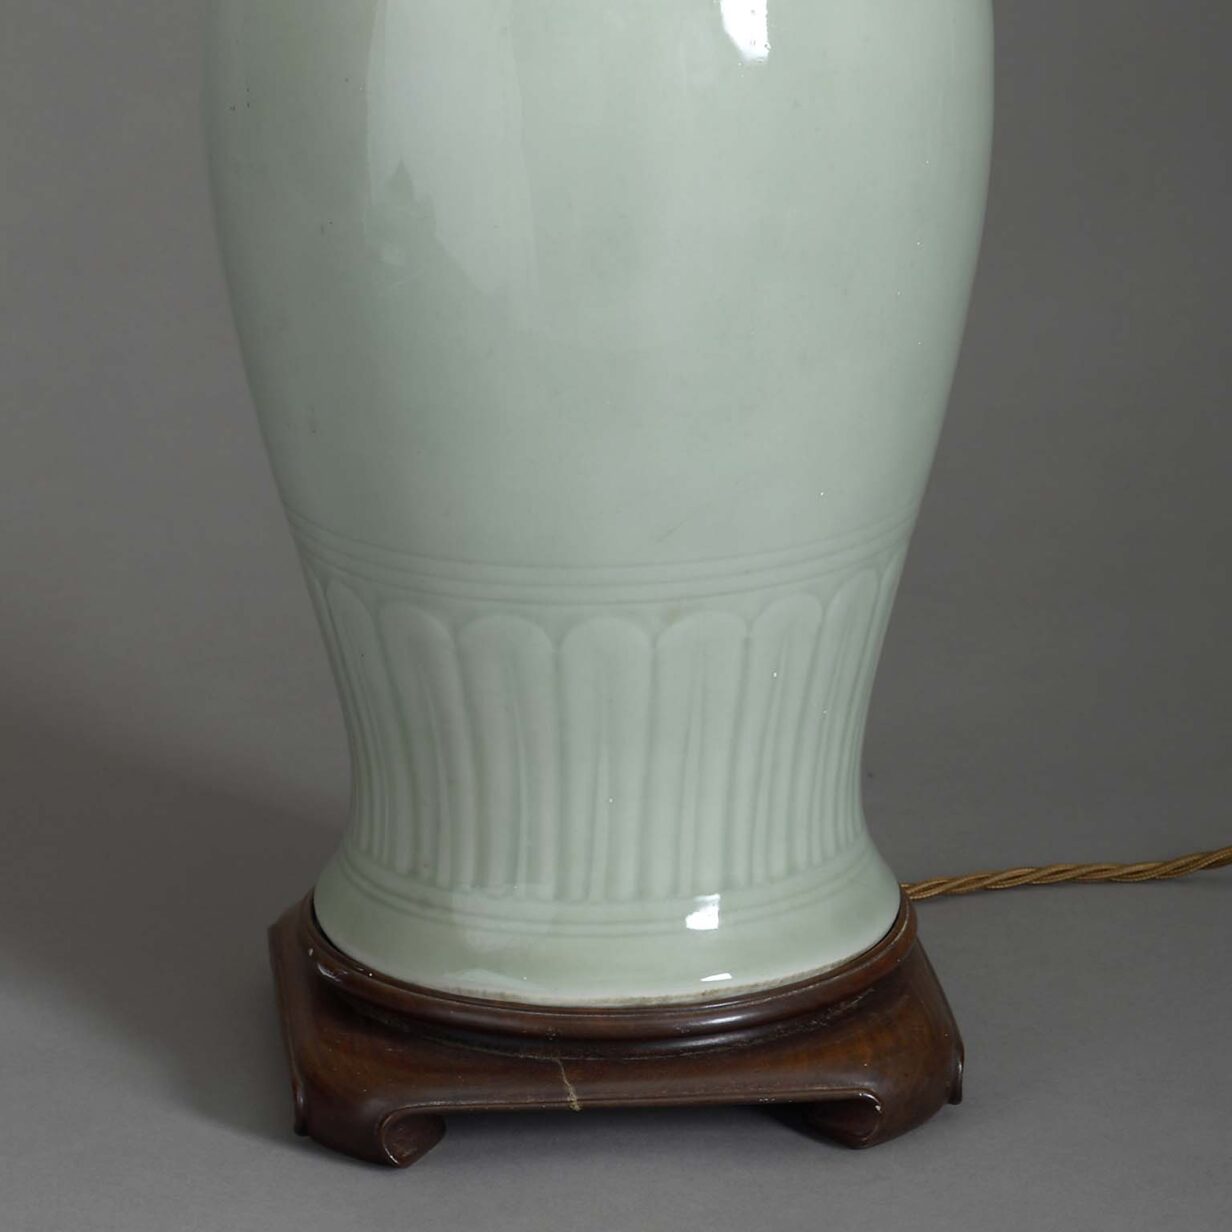 Celadon porcelain table lamp